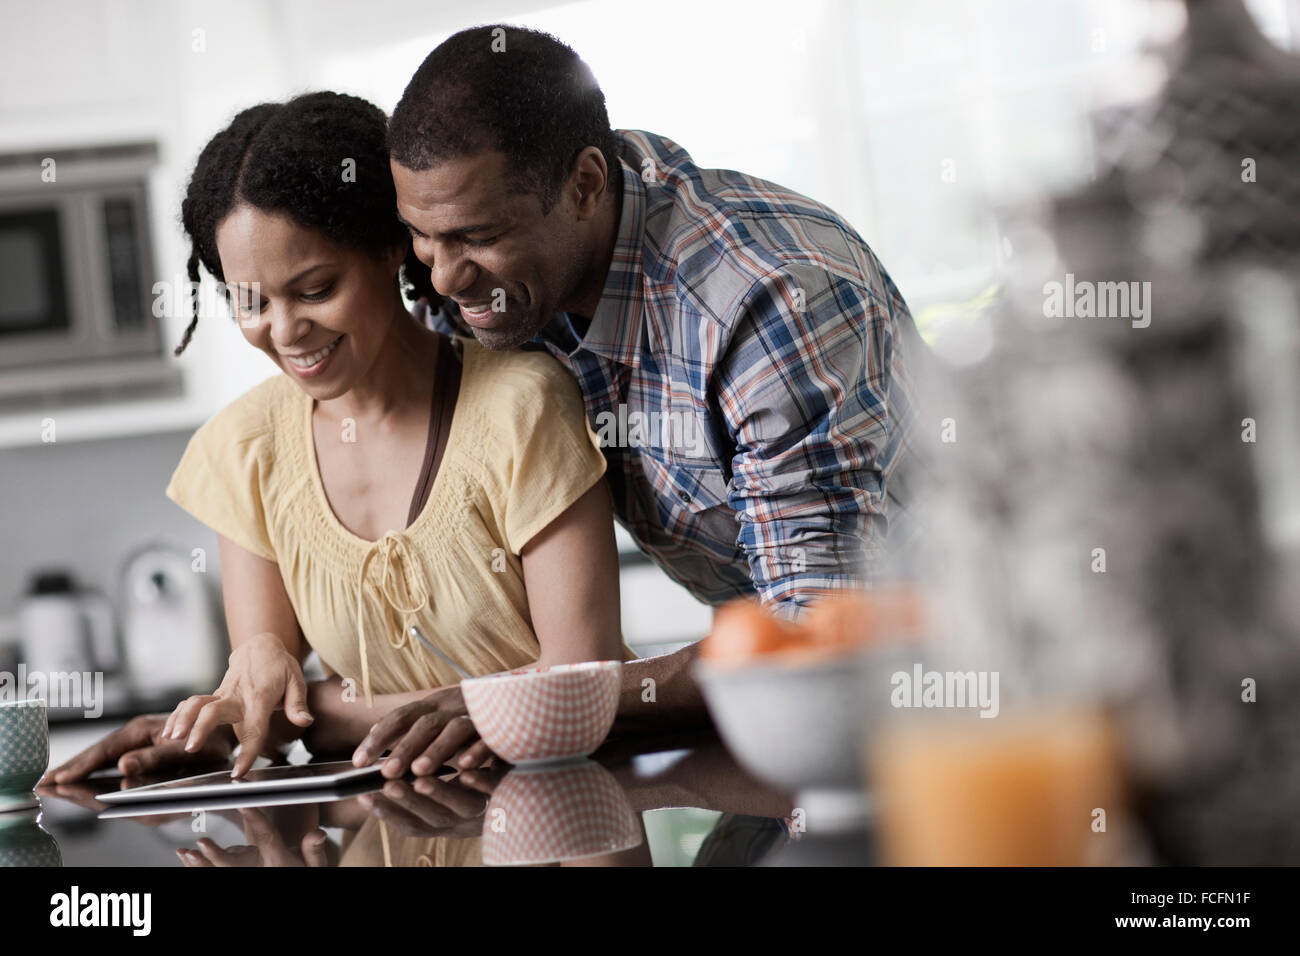 Ein Mann und eine Frau, paar in Ther Küche sowohl Blick auf eine digital-Tablette. Stockfoto